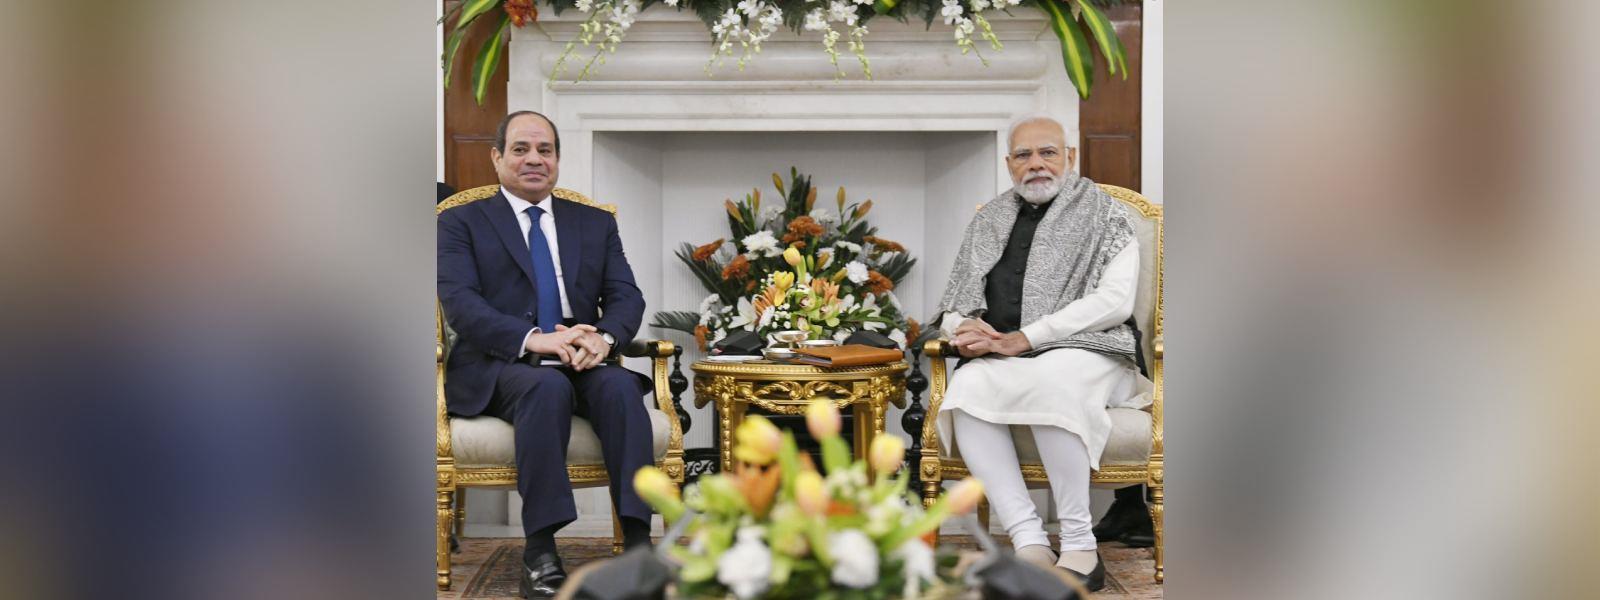 प्रधानमंत्री श्री नरेन्द्र मोदी की हैदराबाद हाउस में मिस्र के राष्ट्रपति महामहिम श्री अब्देल फतह अल- सीसी के साथ बैठक